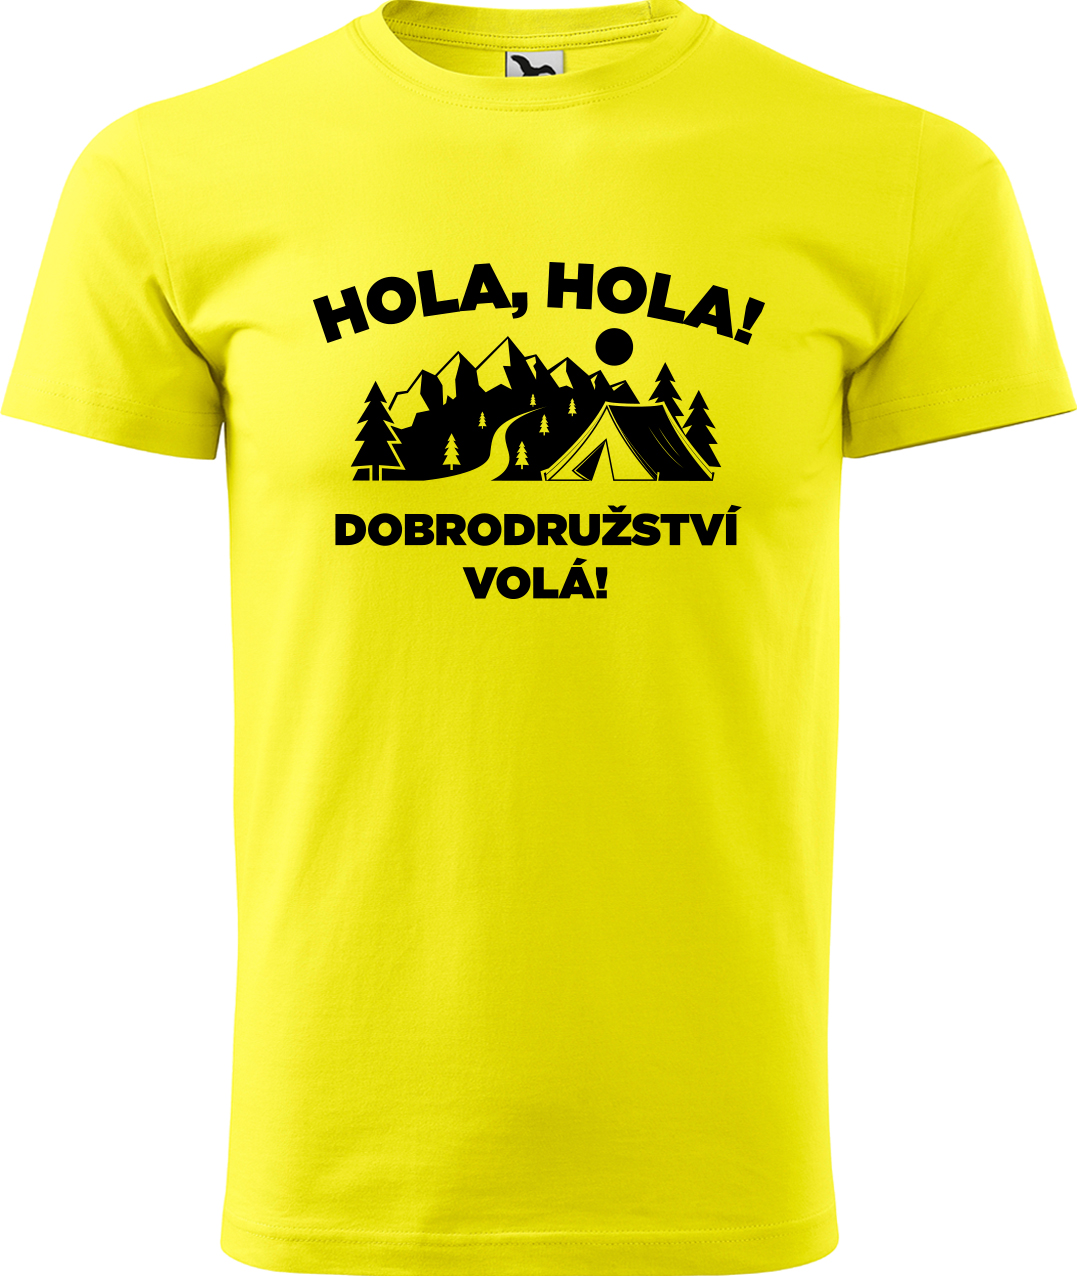 Pánské cestovatelské tričko - Hola hola! Dobrodružství volá! Velikost: L, Barva: Žlutá (04), Střih: pánský